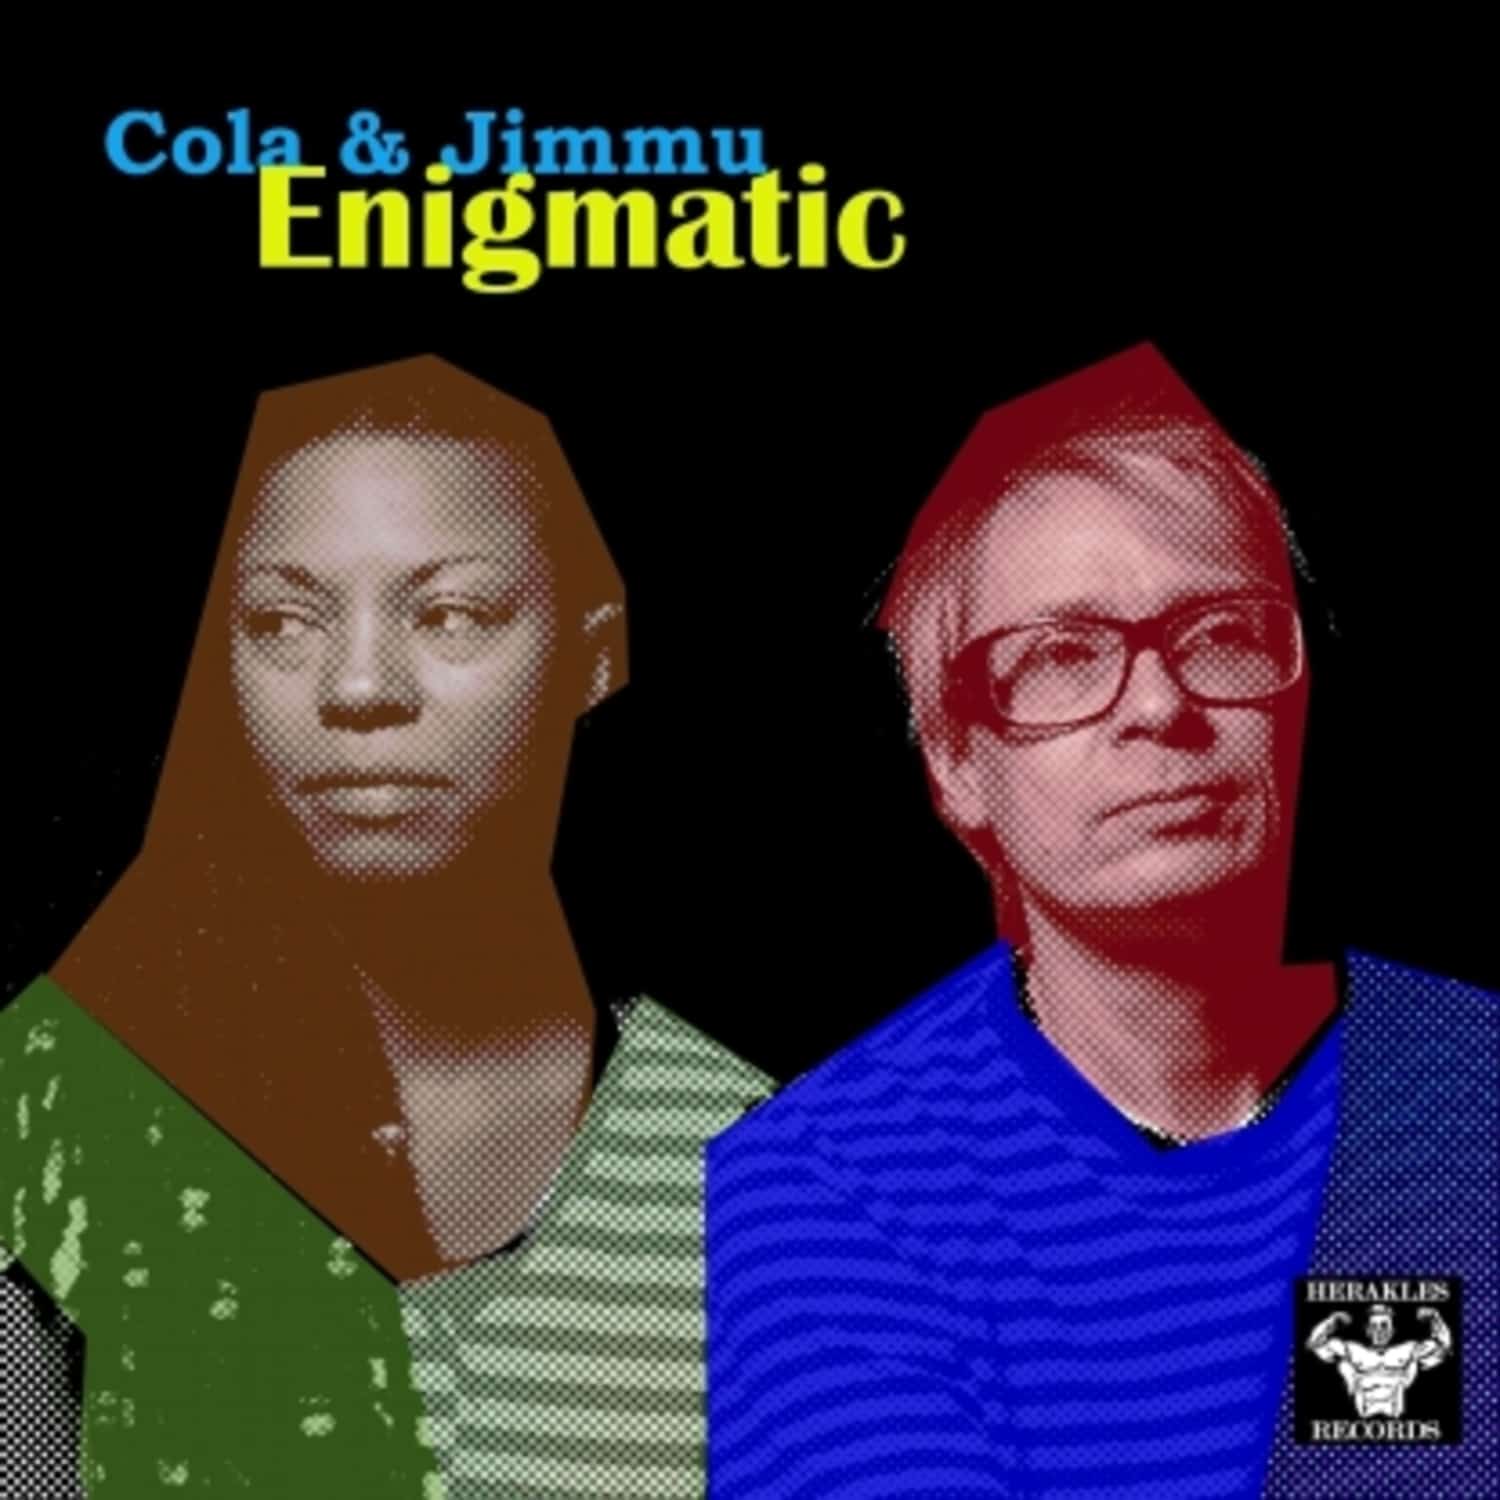 Cola & Jimmu - ENIGMATIC 